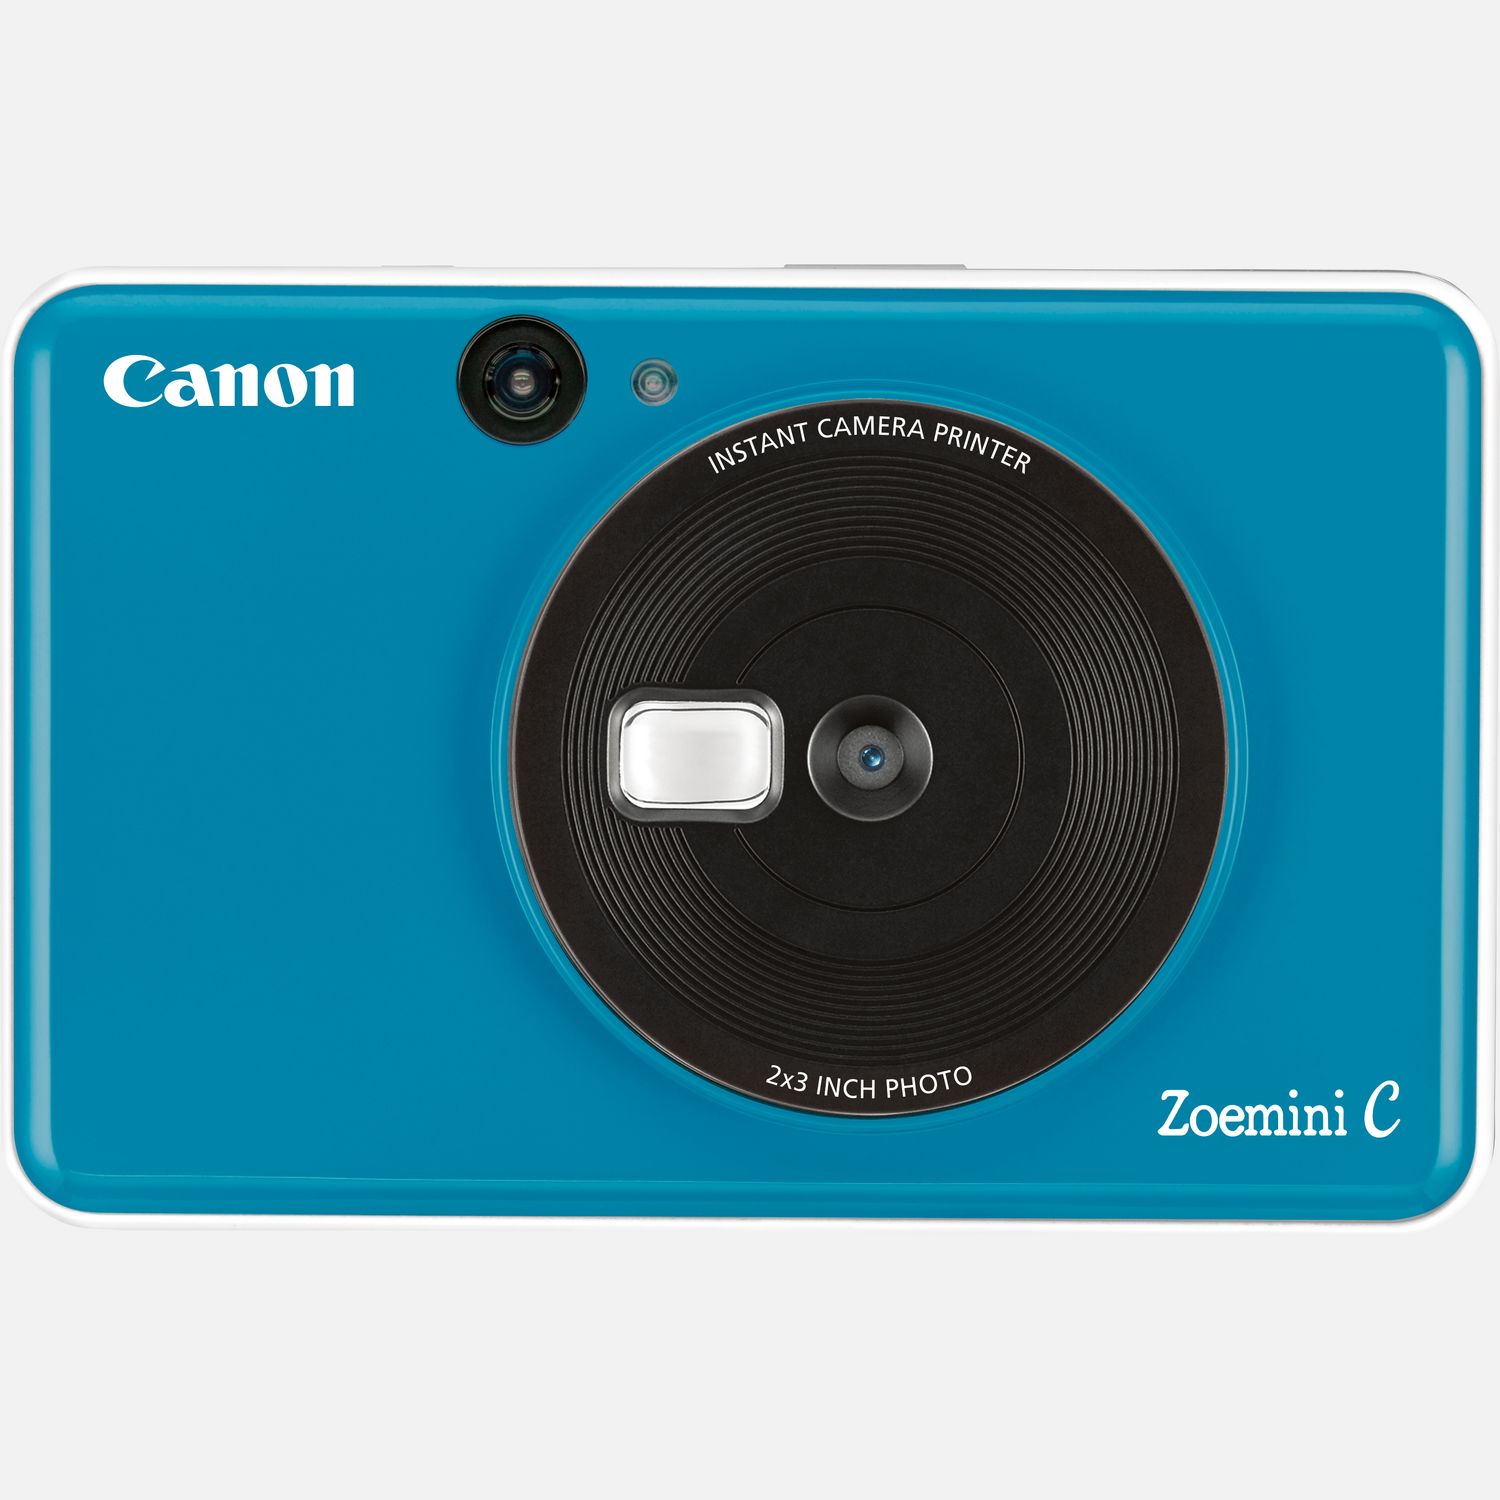 Fotocamera istantanea Canon Zoemini C, Seaside blue